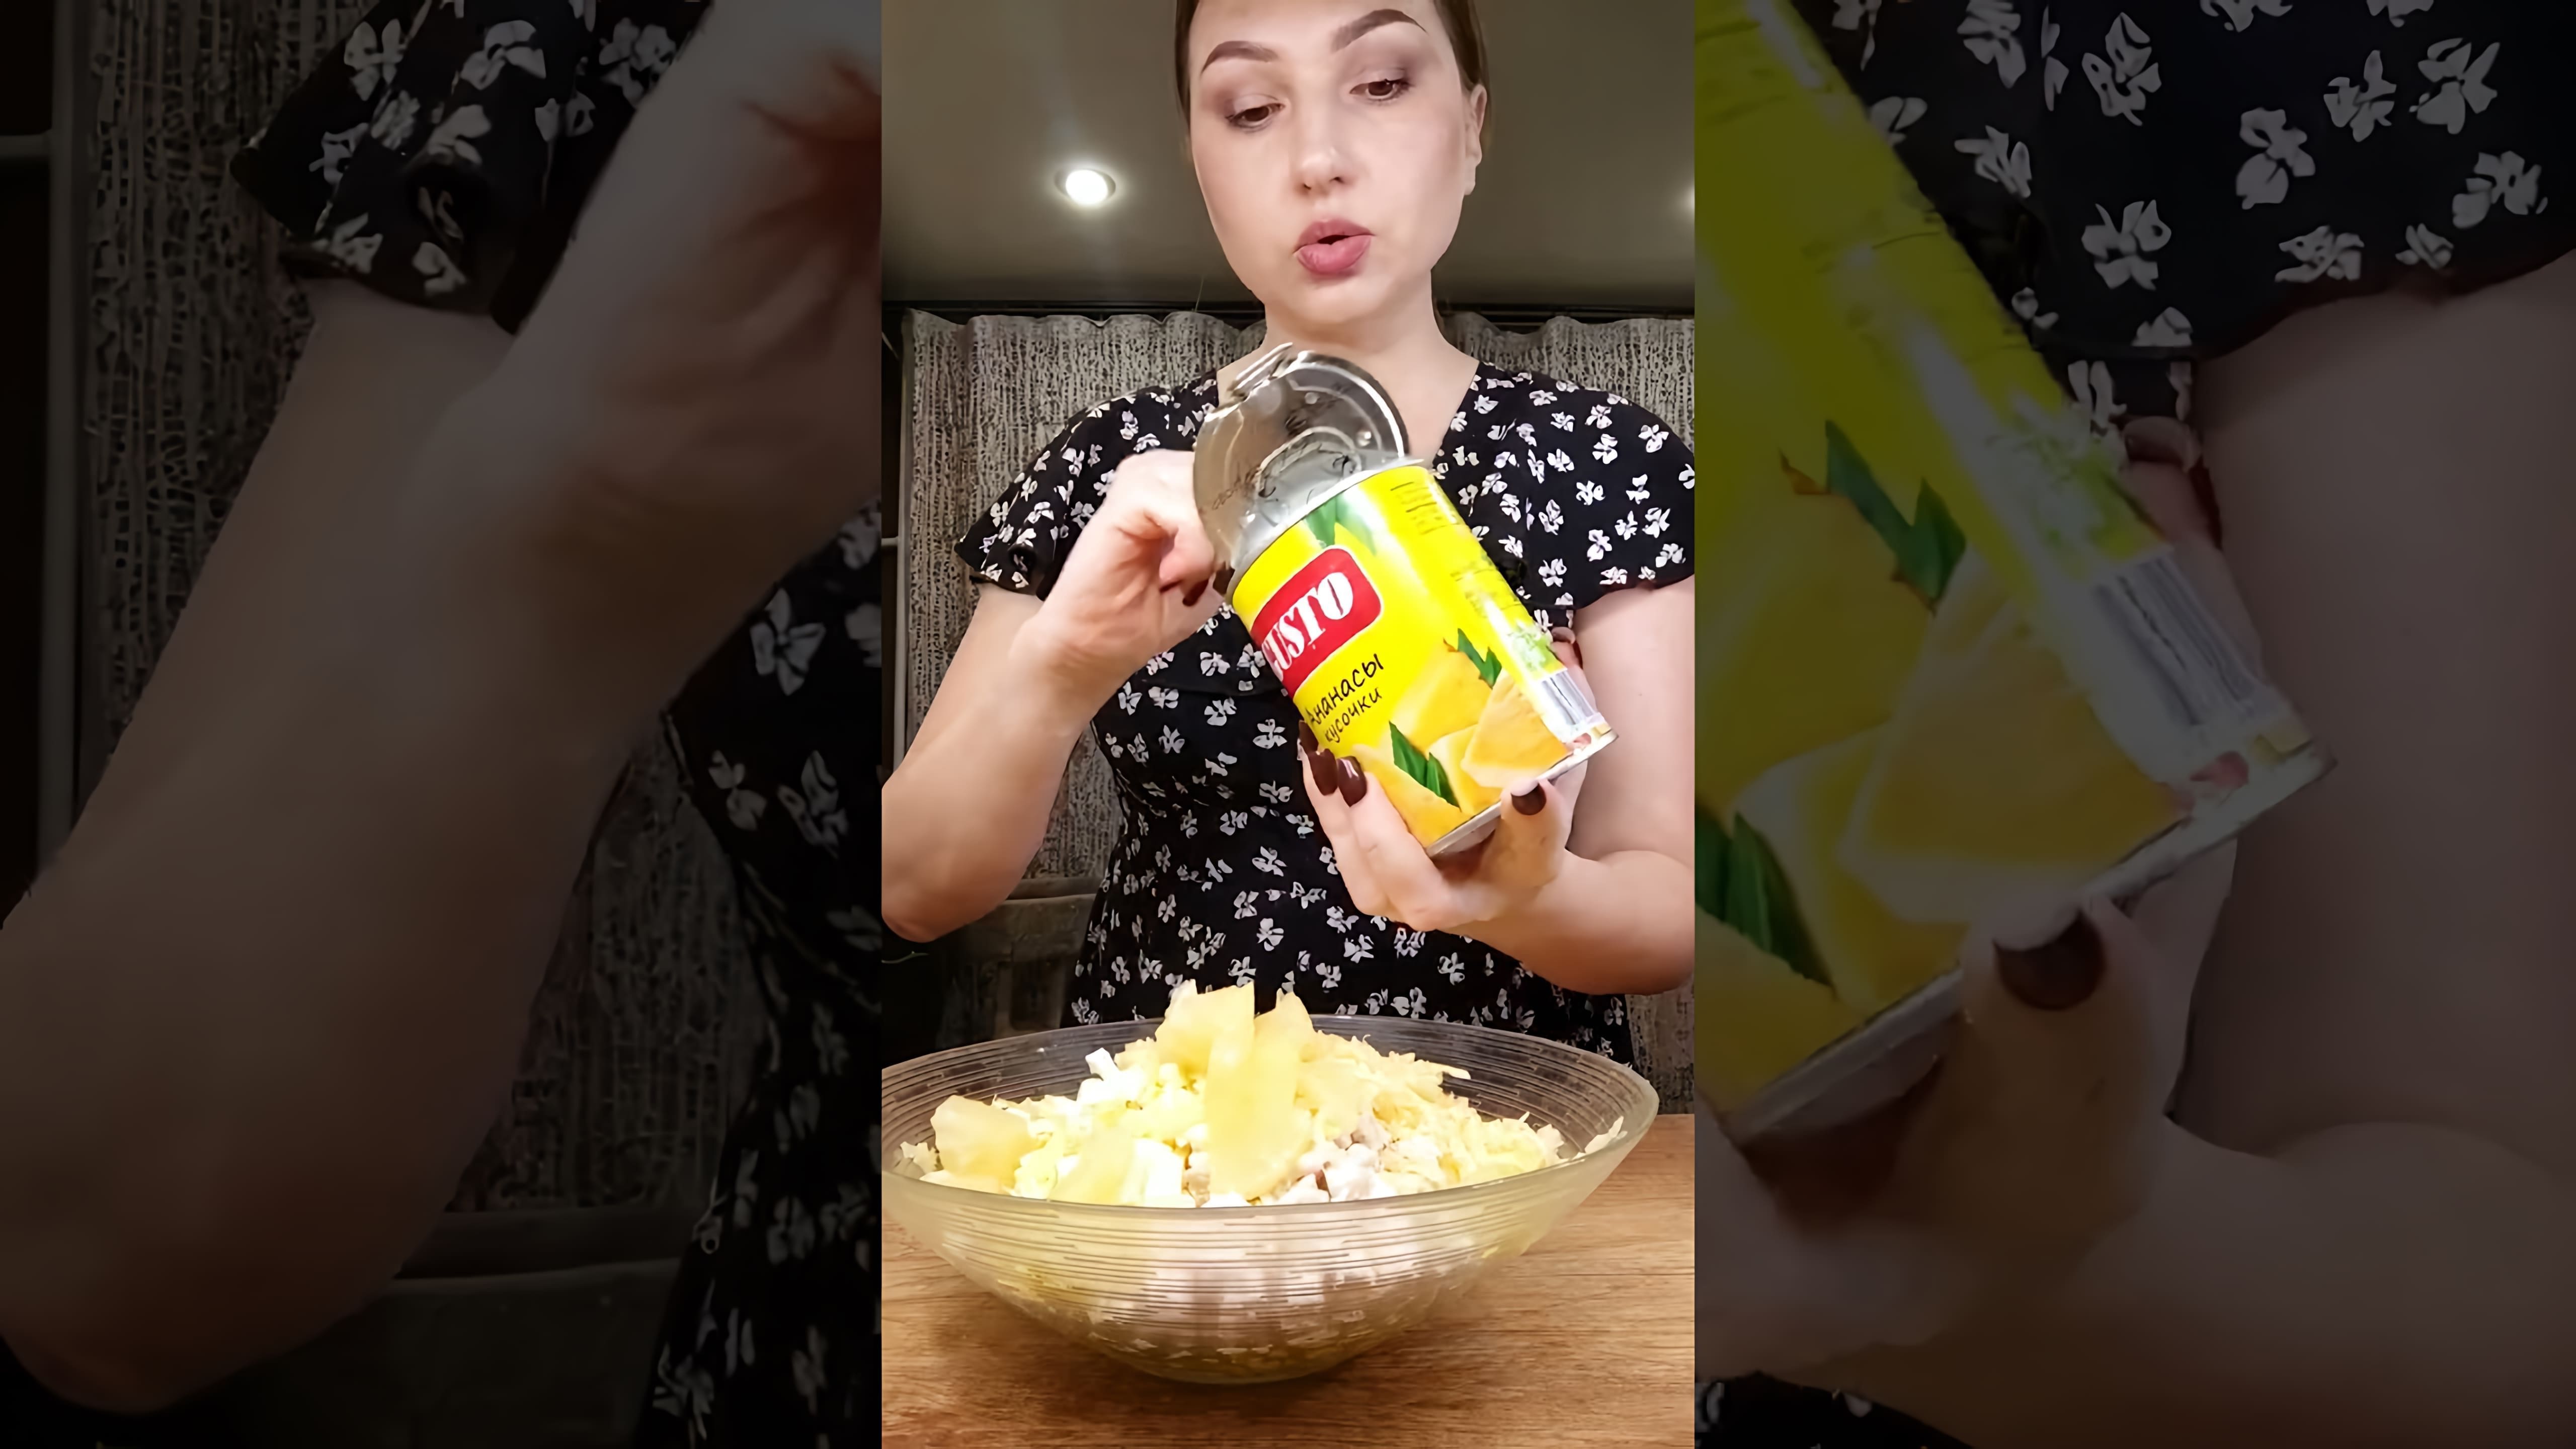 В этом видео демонстрируется рецепт салата из ананаса